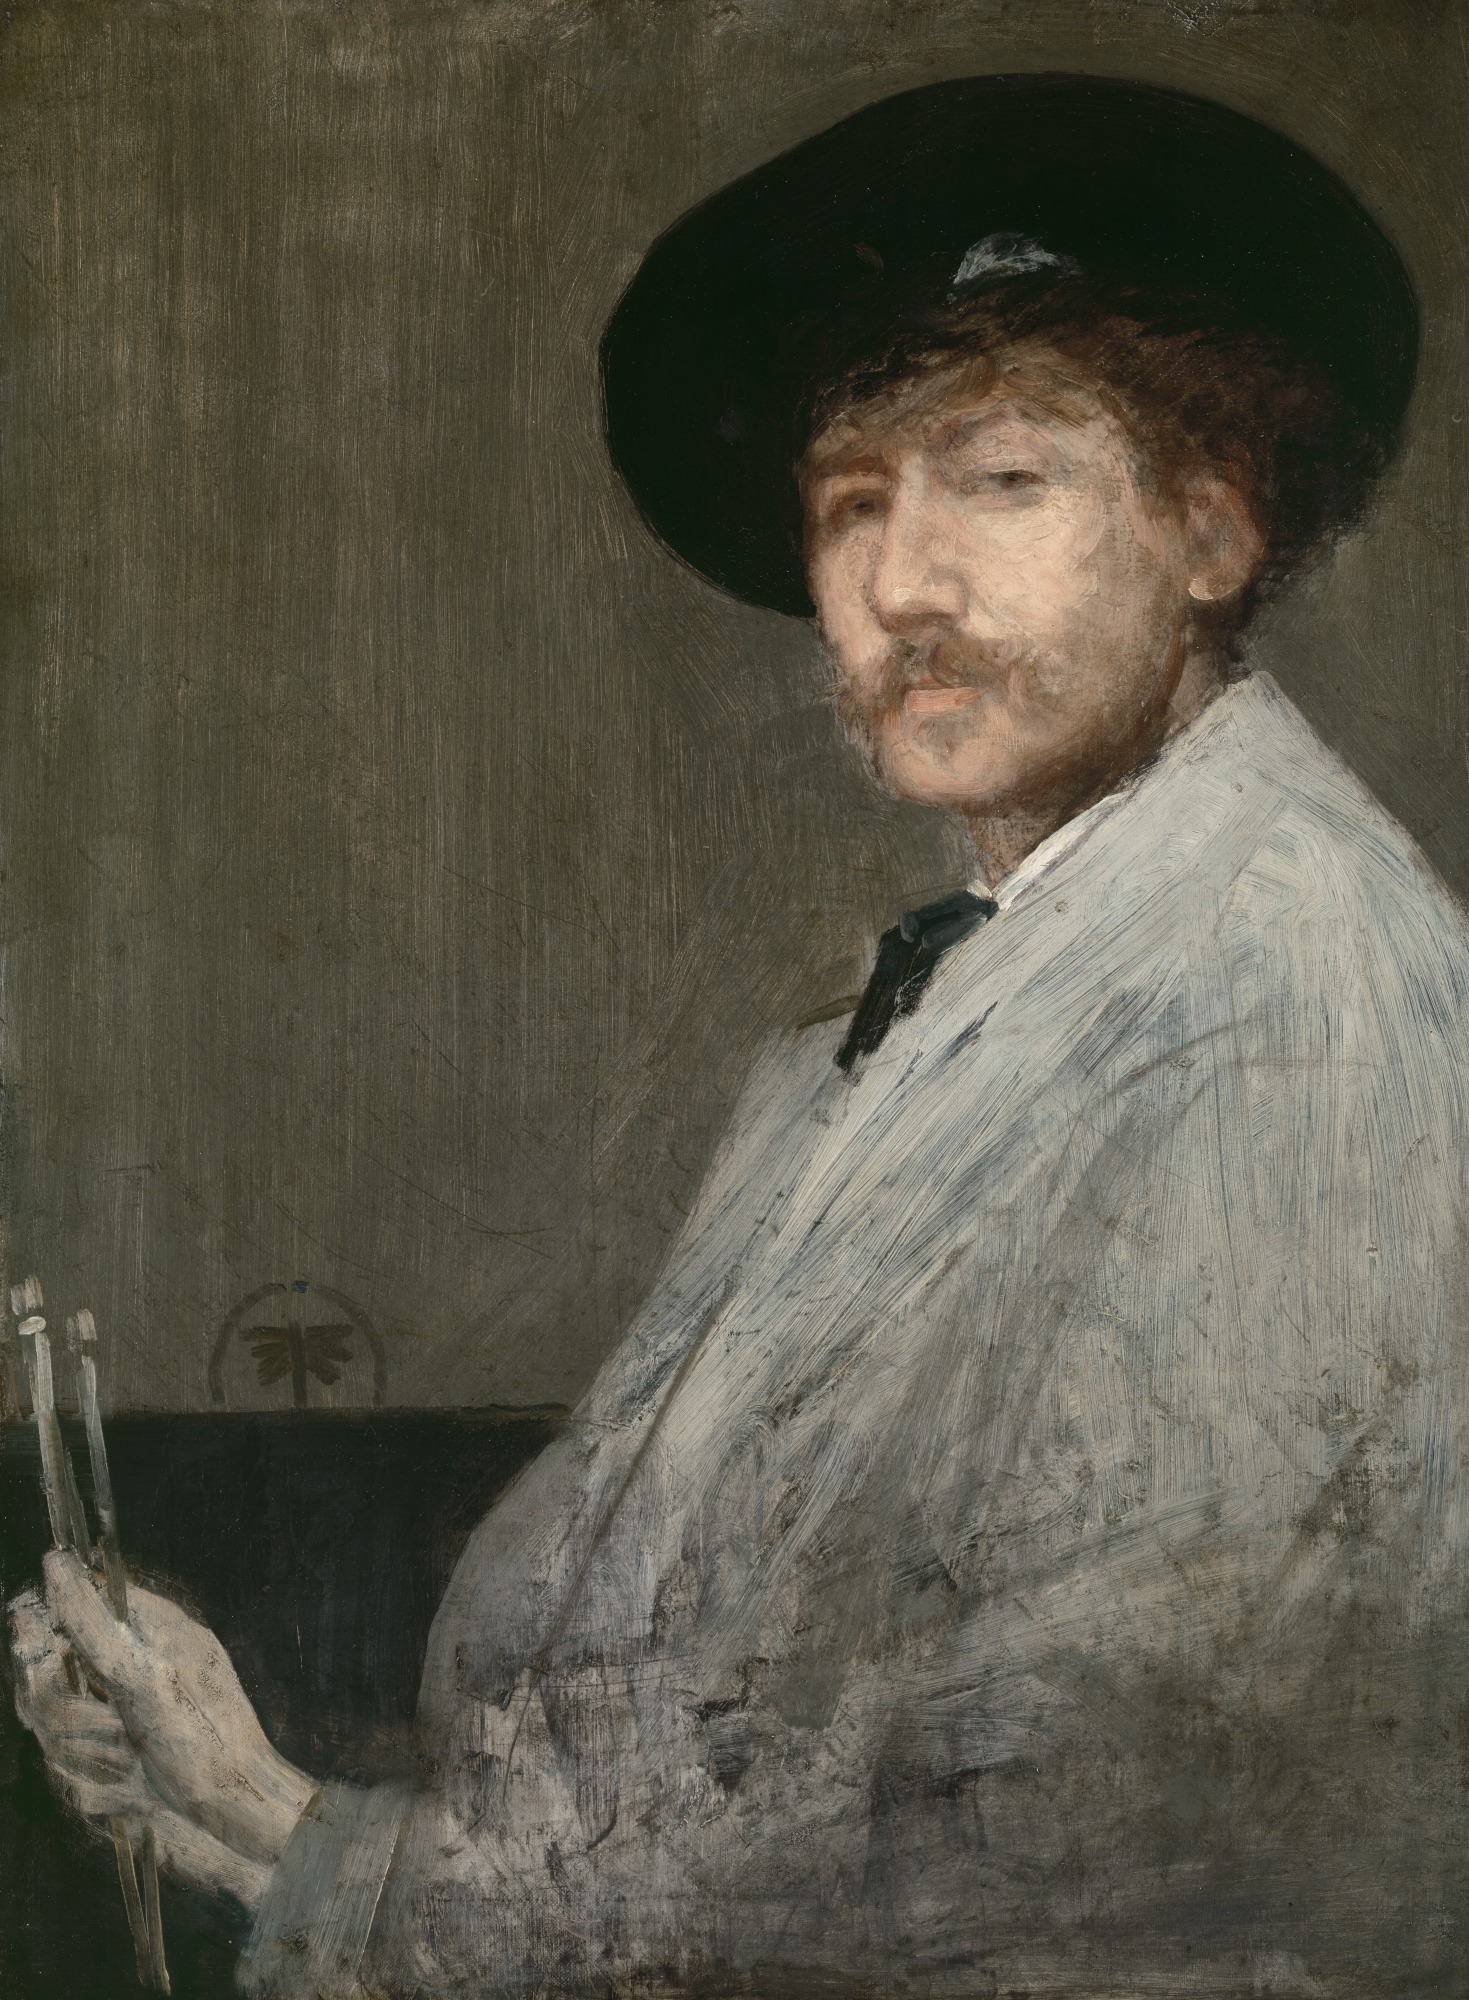 James Abbott McNeill Whistler - 10 Luglio 1834 - 17 Luglio 1903